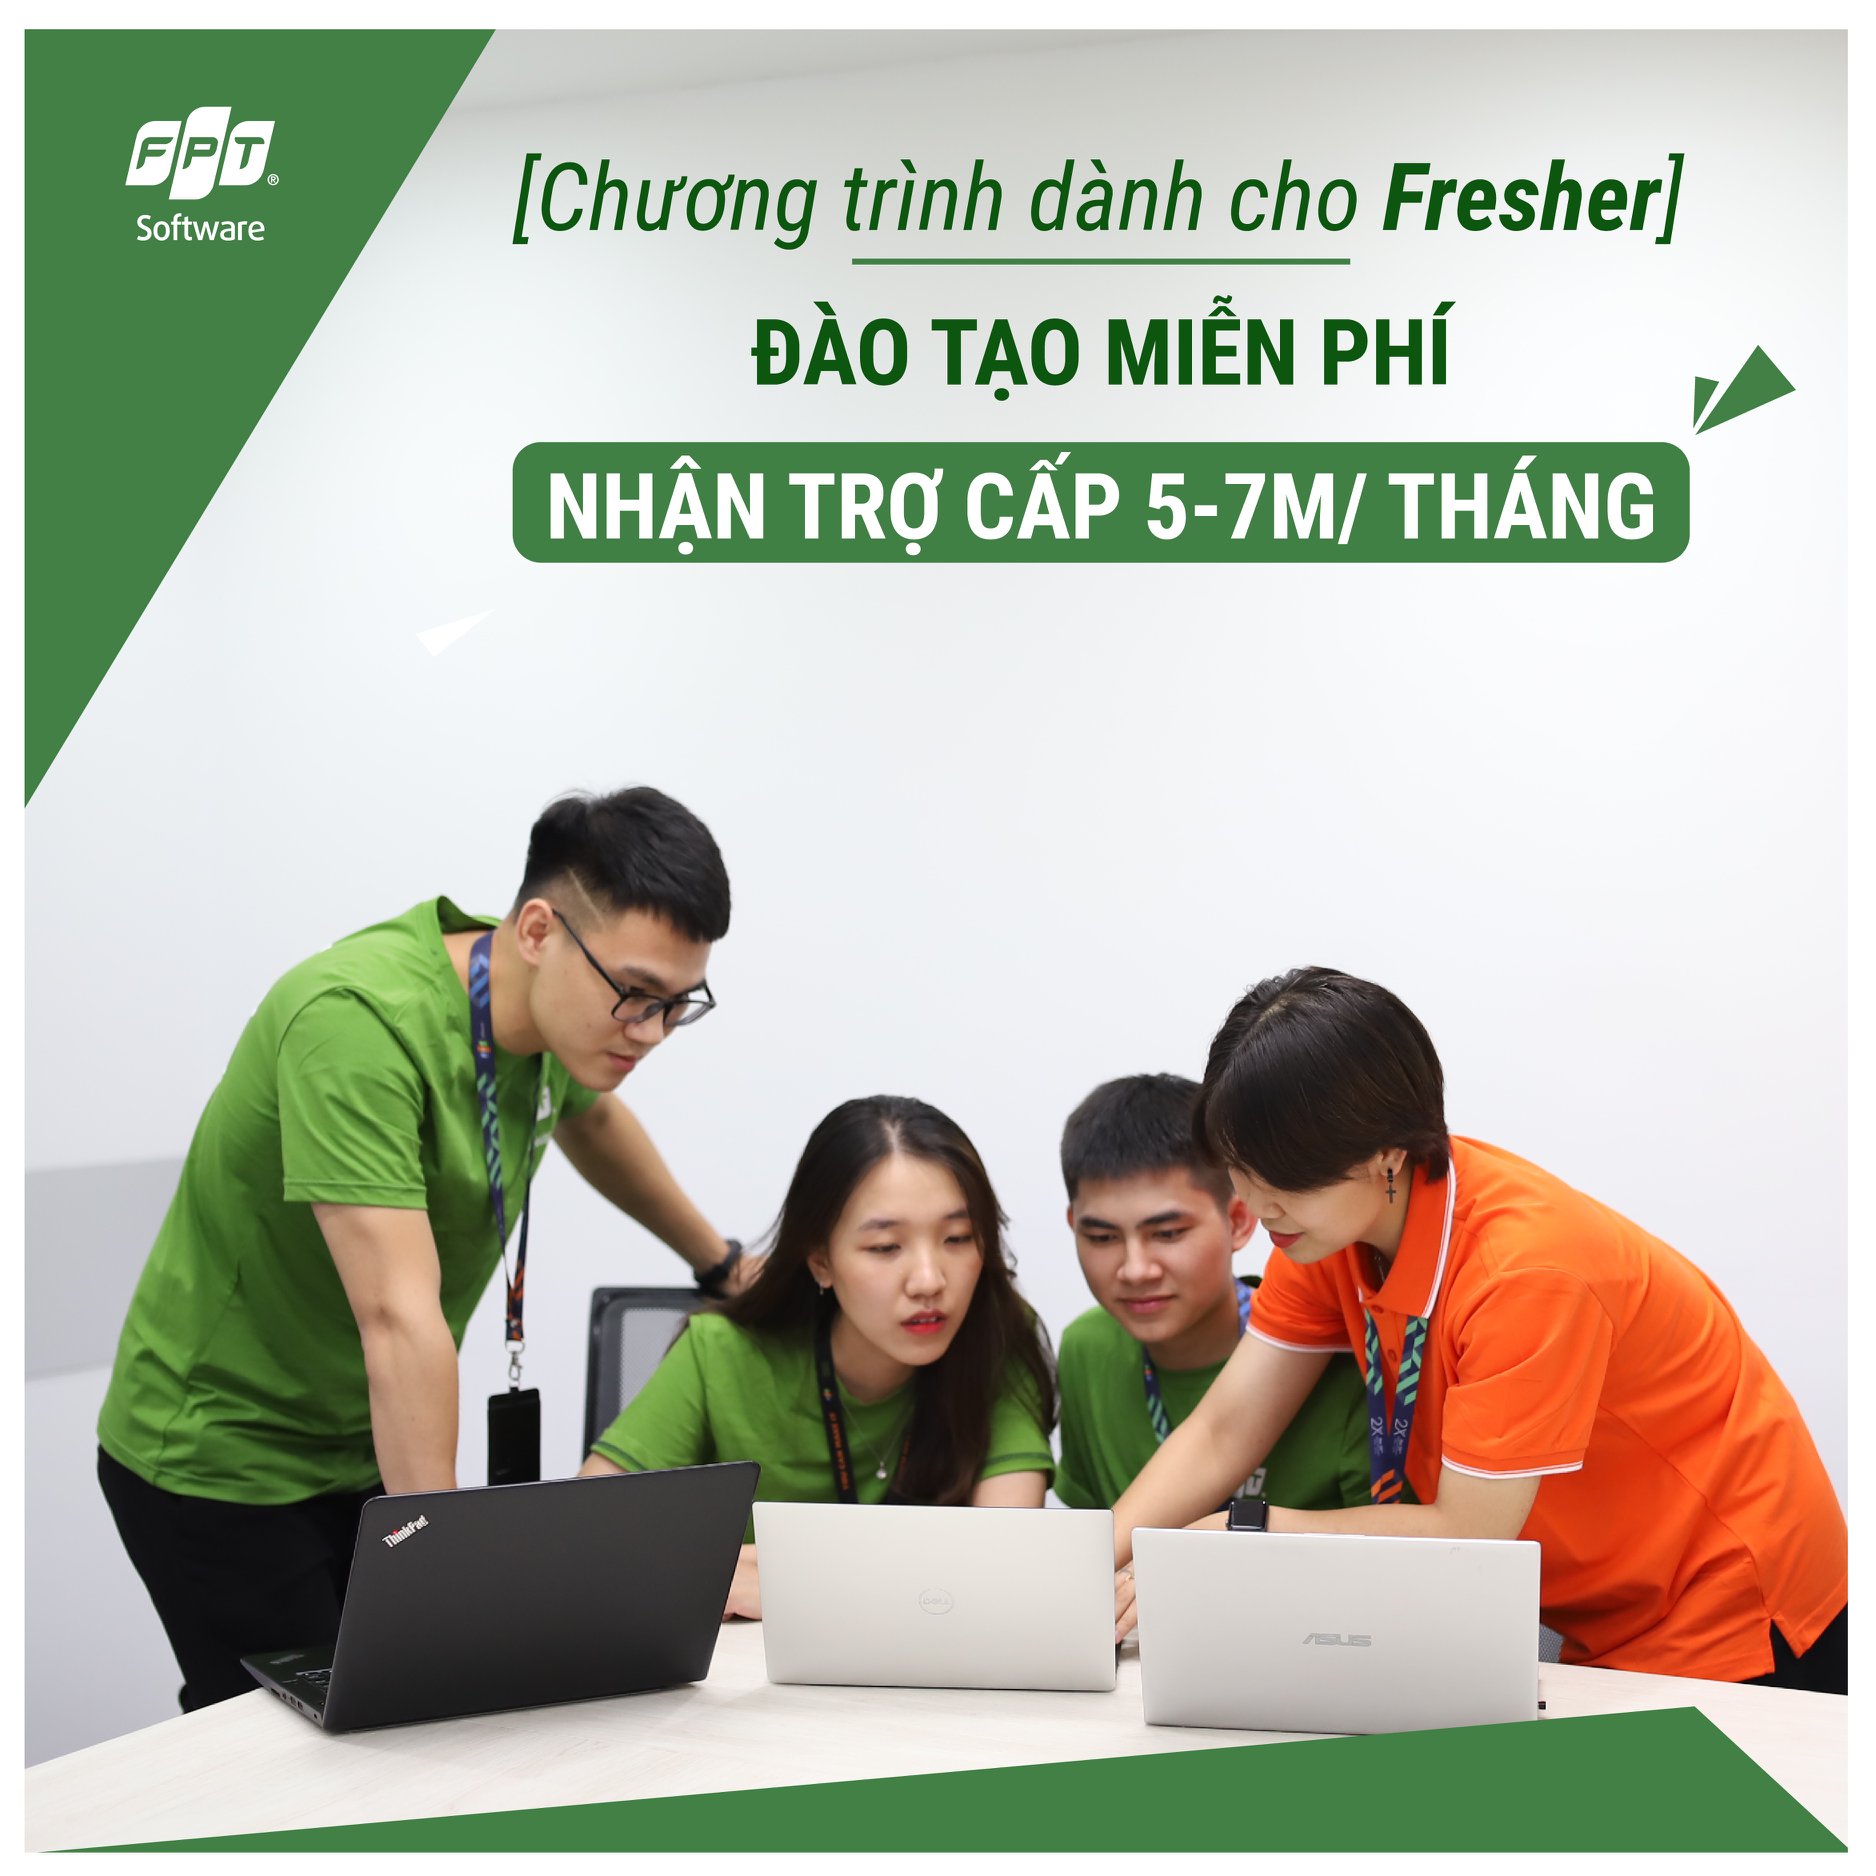 FPT Software tuyển dụng nhiều vị trí hấp dẫn dành cho Fresher IT tại Hà Nội